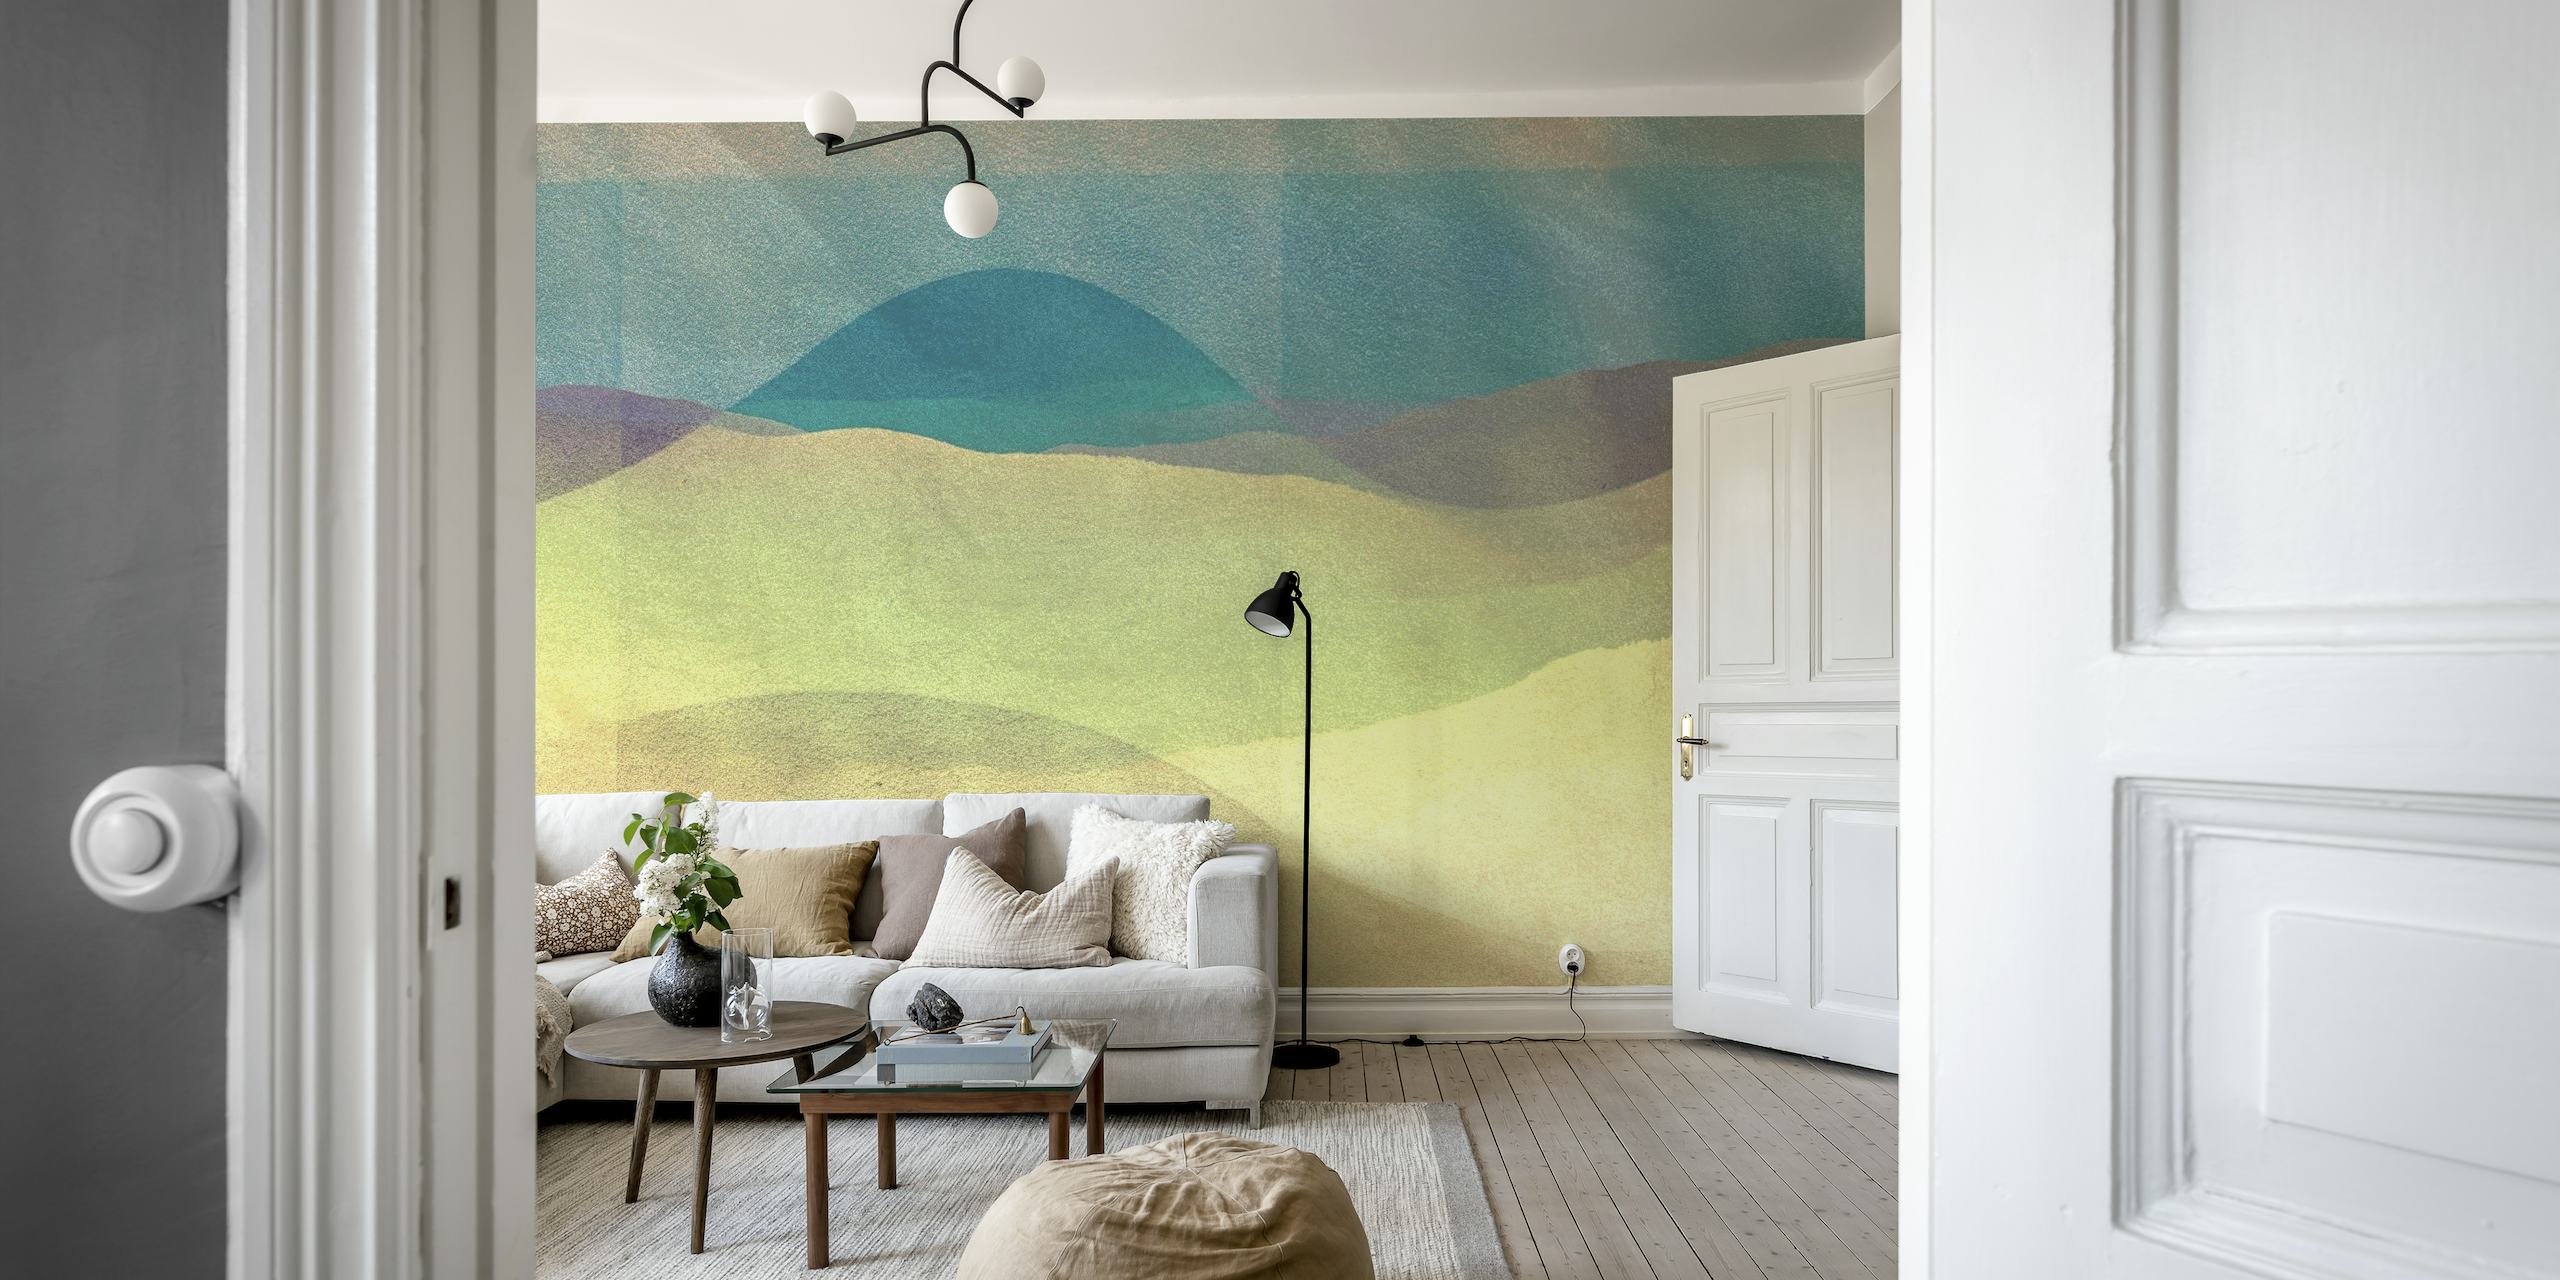 Abstrakti kesäauringon seinämaalaus taviin, vihreillä ja tan sävyillä rauhallisessa maisemasuunnittelussa.